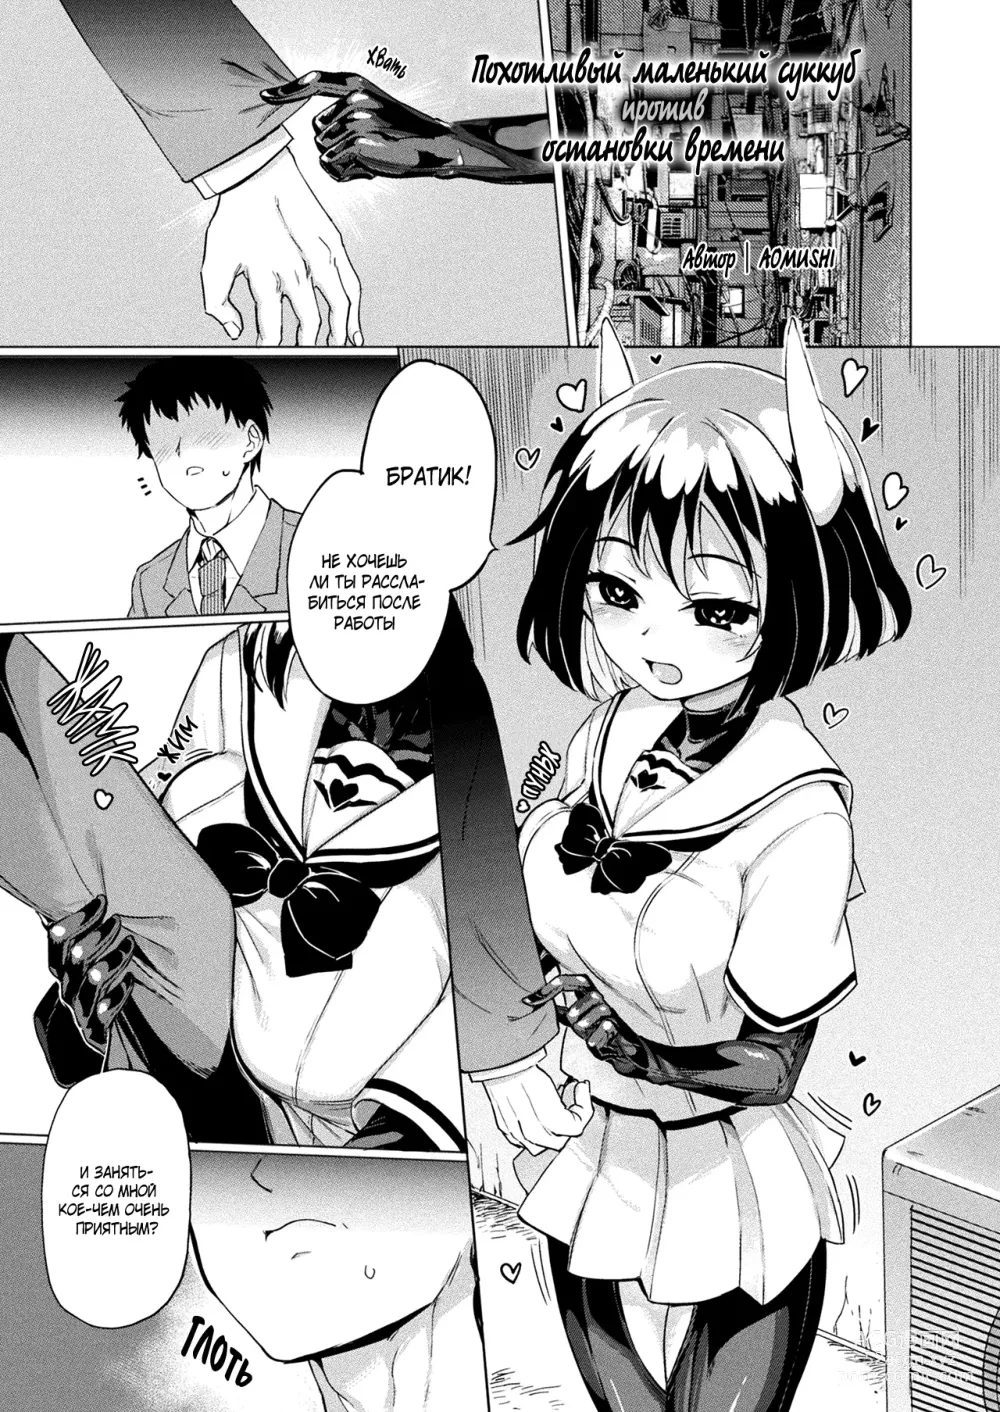 Page 1 of manga Похотливый маленький суккуб против остановки времени